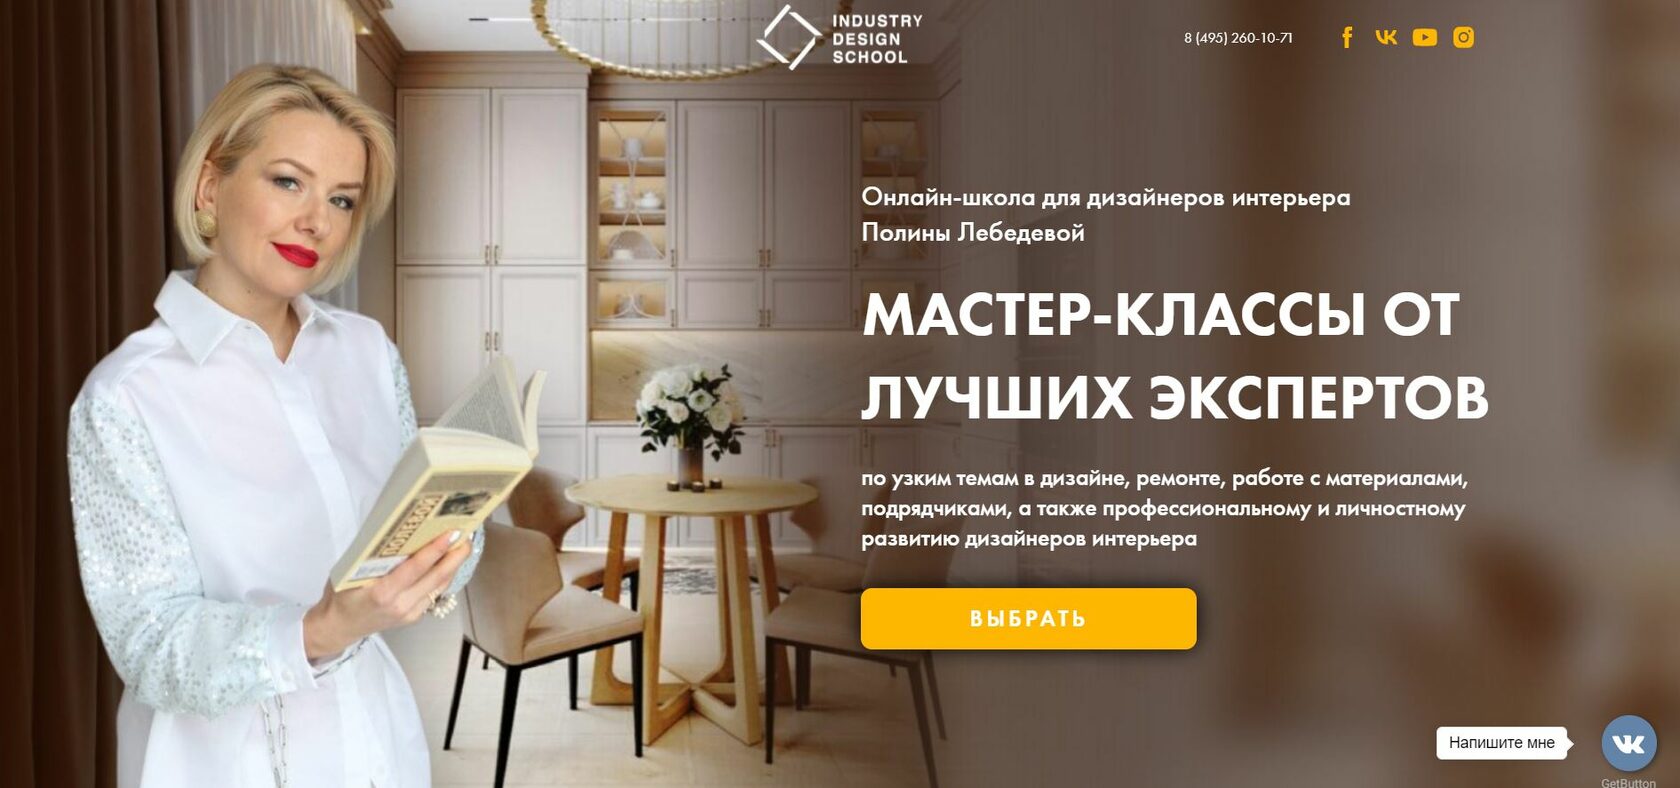 Мастер-классы и вебинары российских и зарубежных дизайнеров | Международная Школа Дизайна